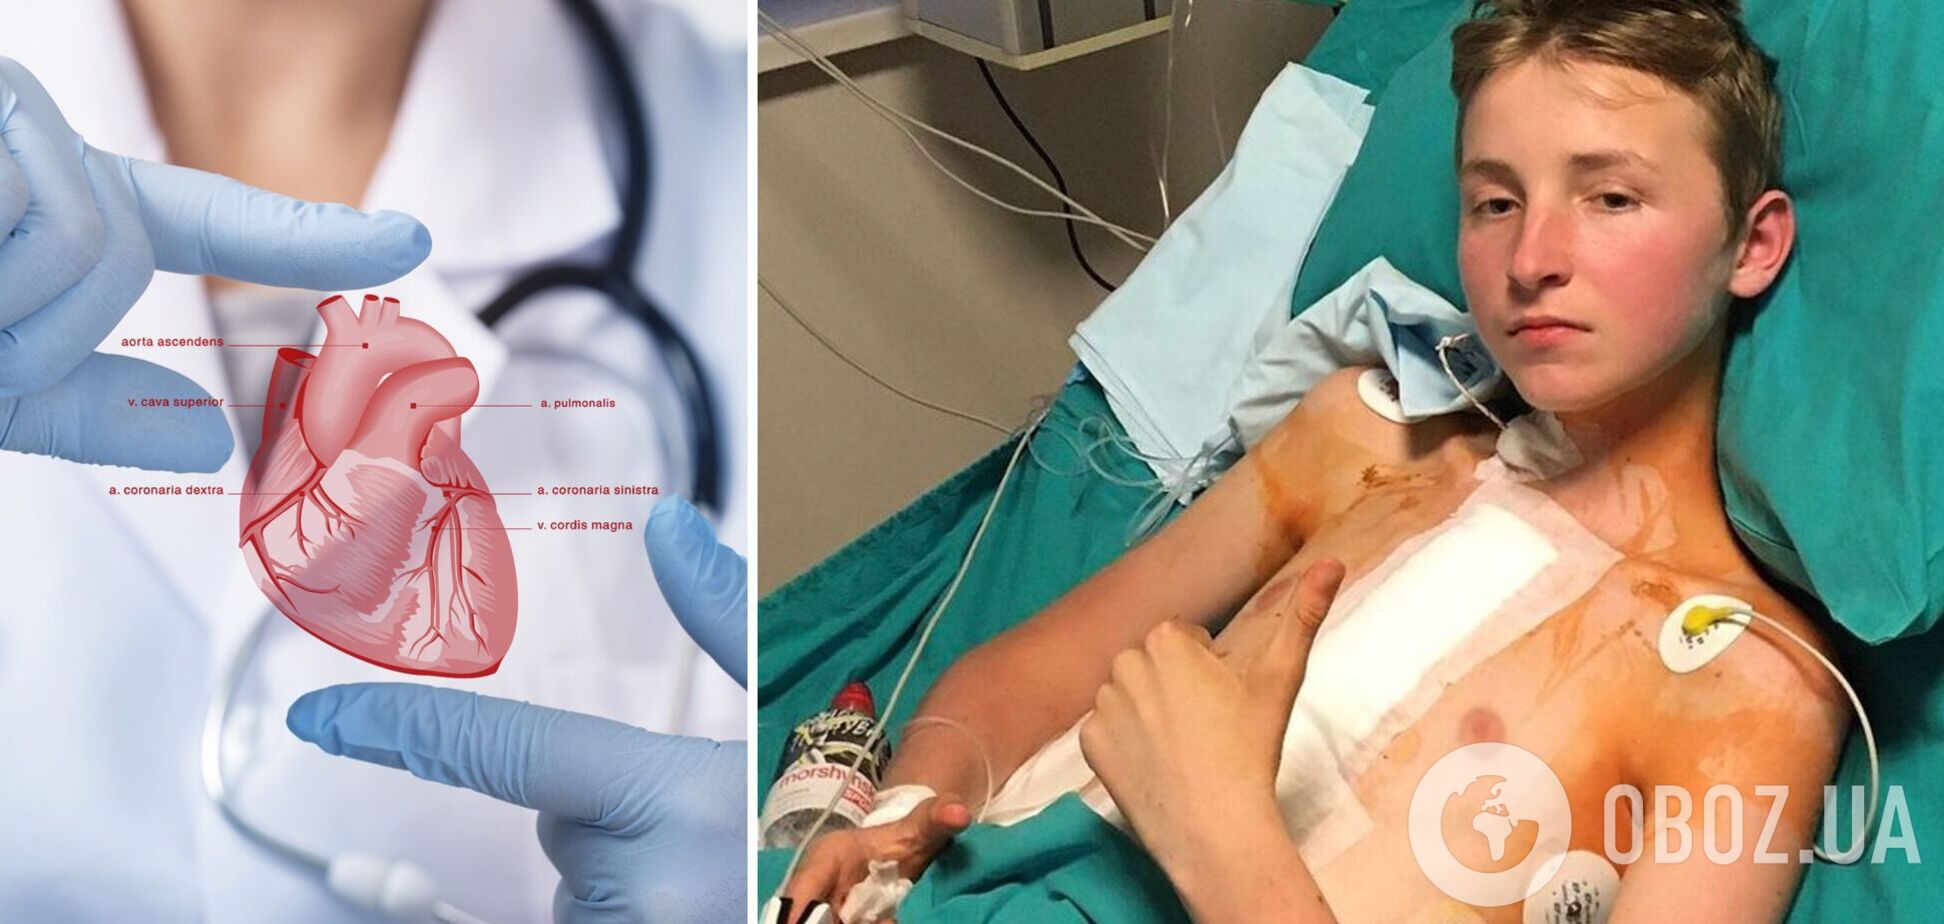 13-летний подросток, которому впервые в Украине пересадили сердце, о своем состоянии: дышать легче. Фото